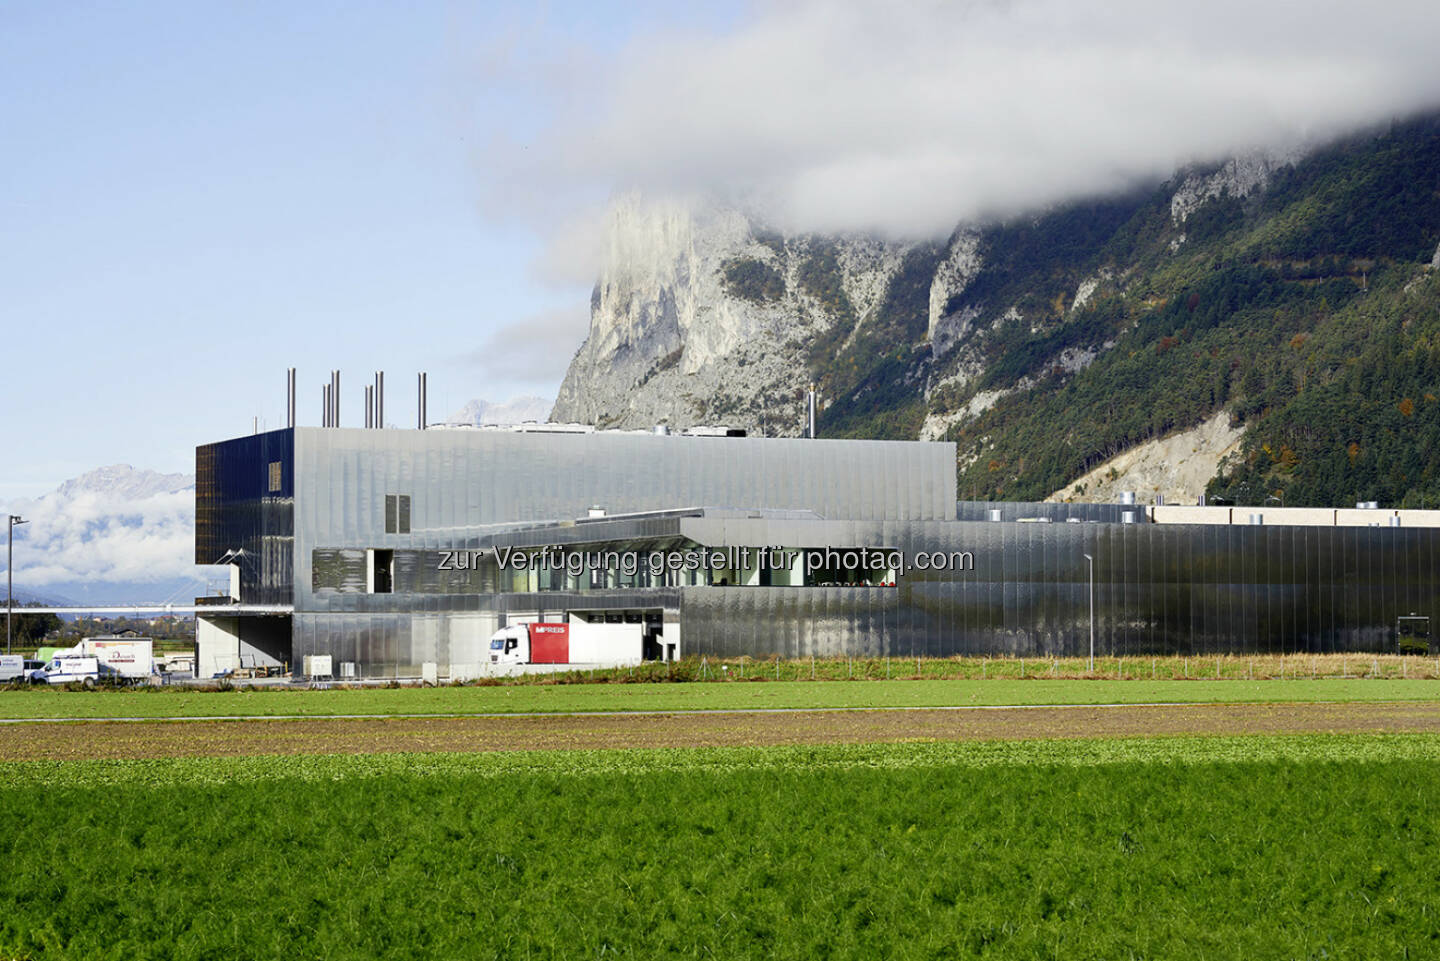 Jenbacher: Die Tiroler Supermarktkette MPreis setzt in ihrer Firmenzentrale in Völs bei Innsbruck  auf Energieeffizienz. Nachdem im neuen Betriebsgebäude für die Metzgerei und die Bäckerei Photovoltaikmodule mit einer Gesamtfläche von rund 3.200 m2 installiert wurden, ging Ende August ein weiteres Highlight in Betrieb: Ein Jenbacher Gasmotor des Typs J412 von GE versorgt die Firmenzentrale nun mit Strom und wertvoller Wärme und erreicht dabei einen Gesamtwirkungsgrad von 87,9%. (c) Aussendung